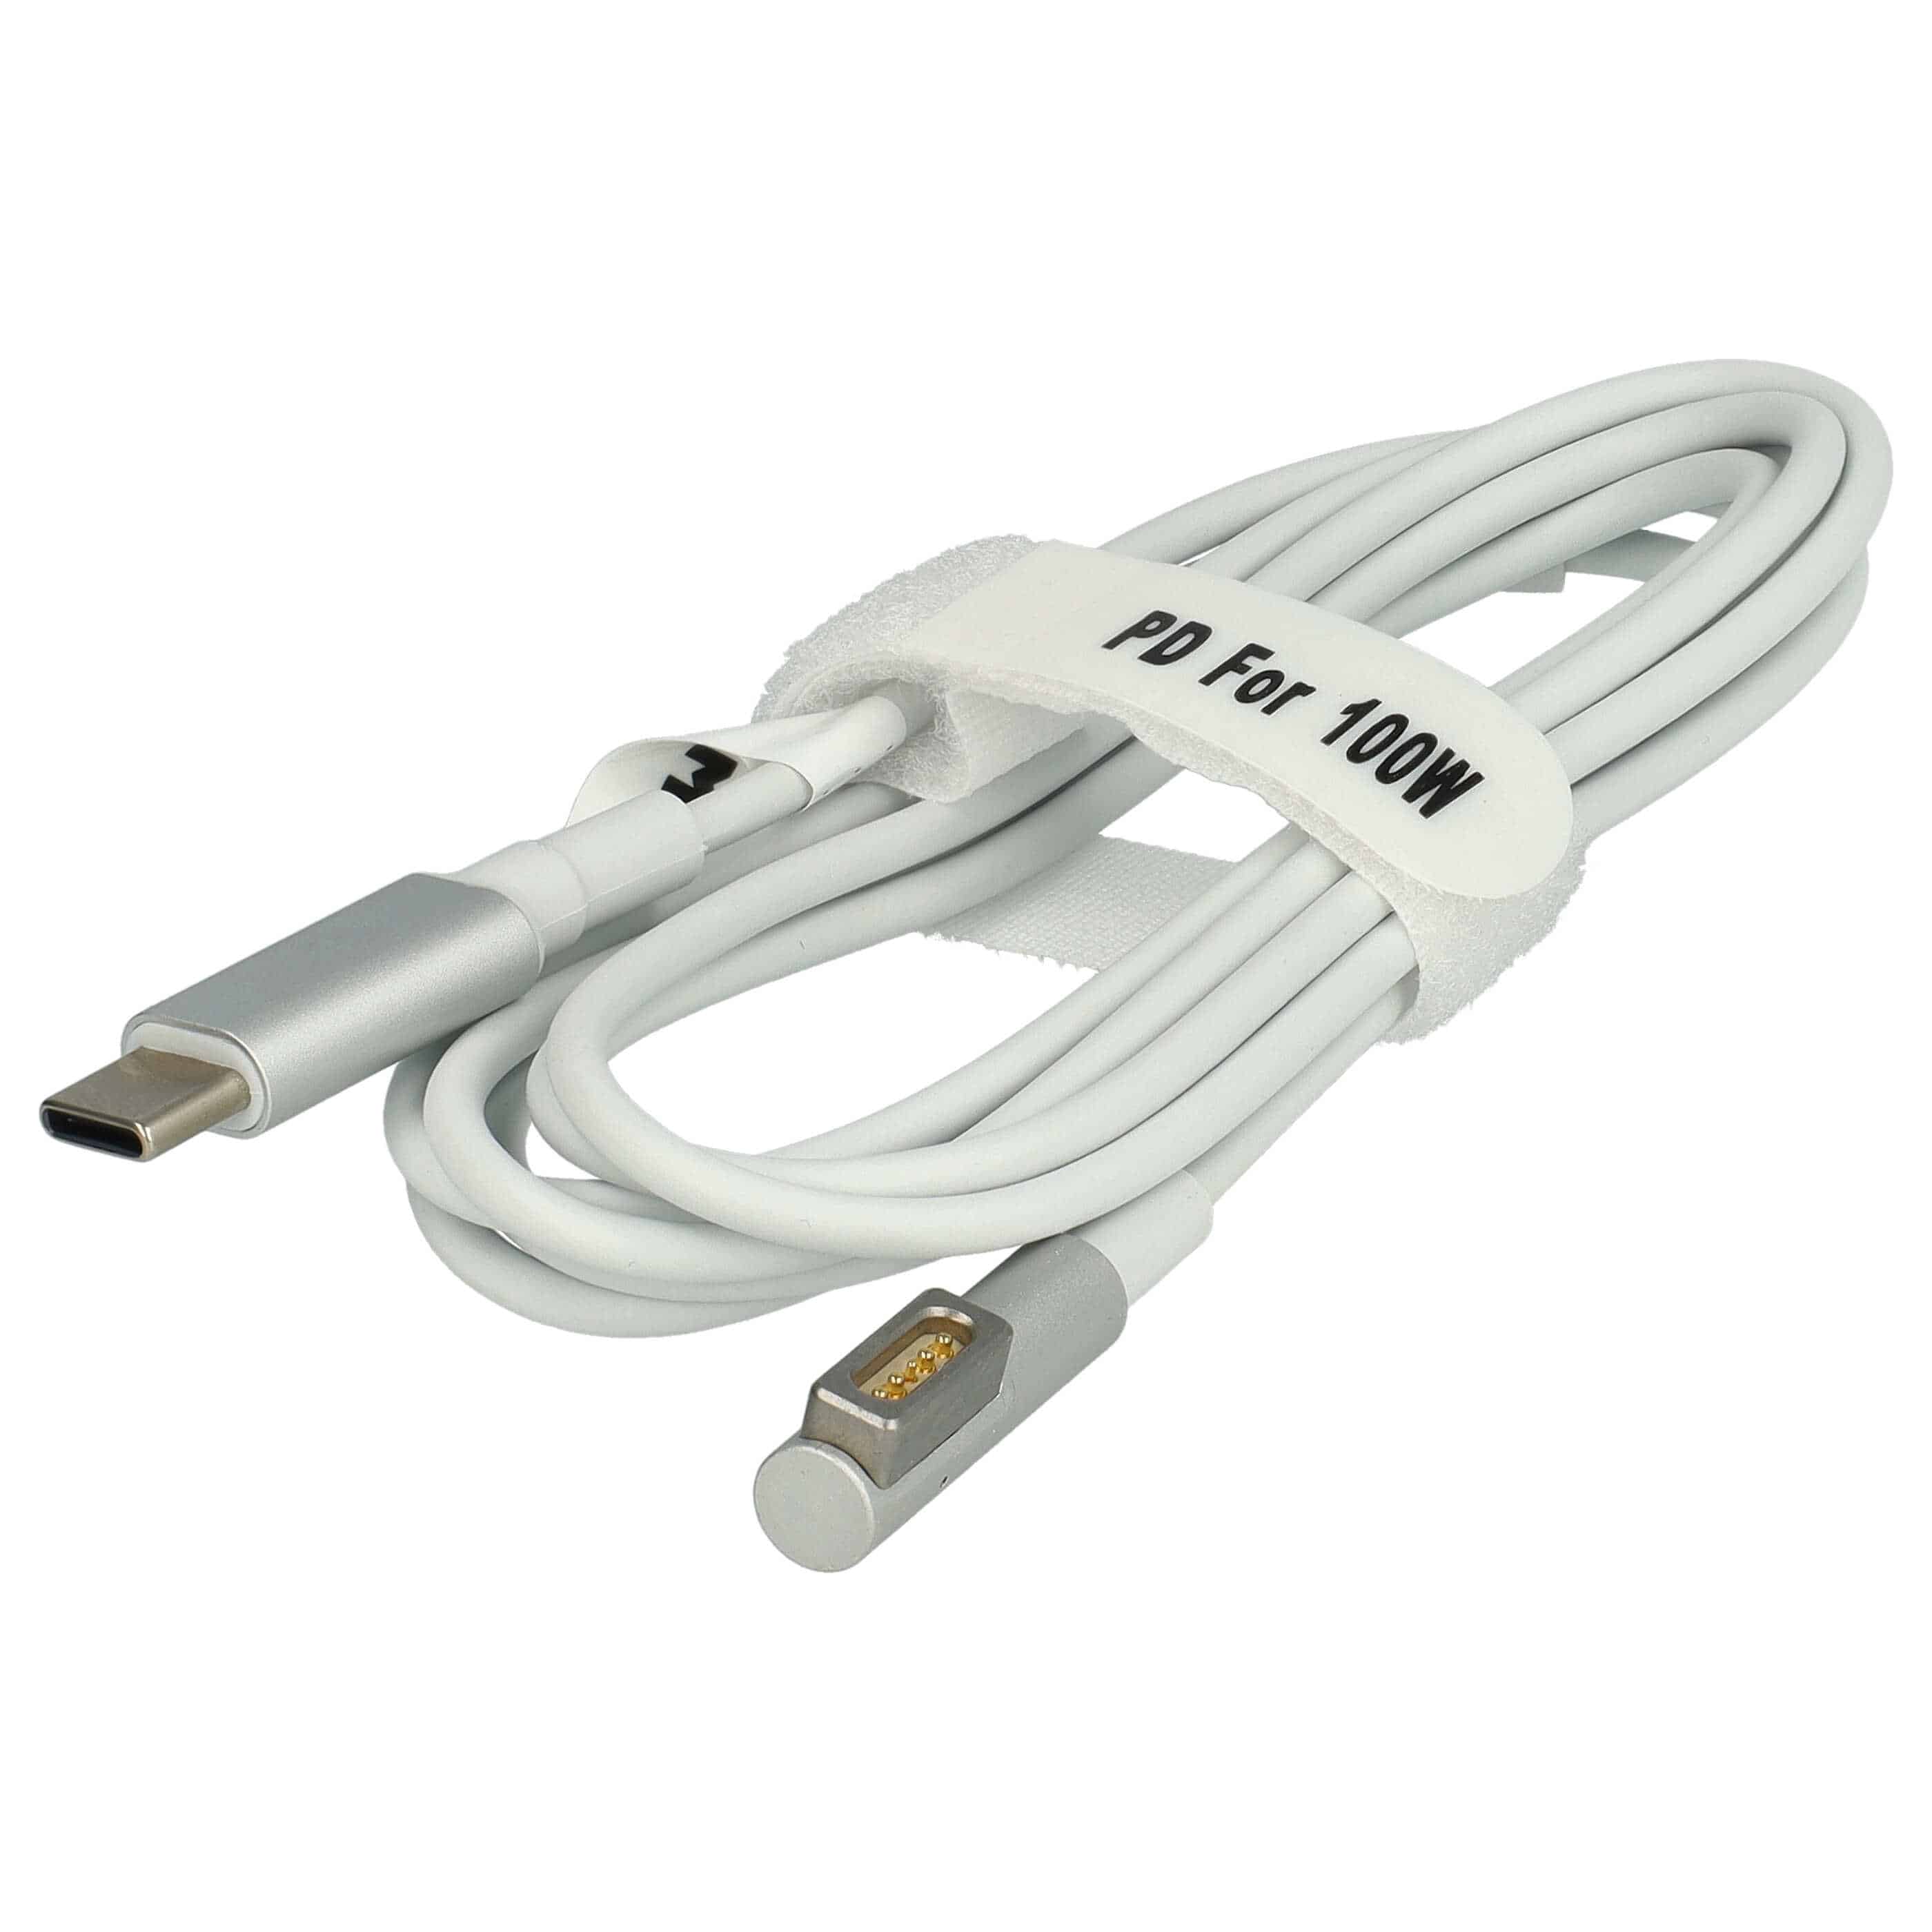 Kabel USB-C na MagSafe 1 do laptopa Apple zamiennik Apple ADA-C2MS1 - 100 W, PVC